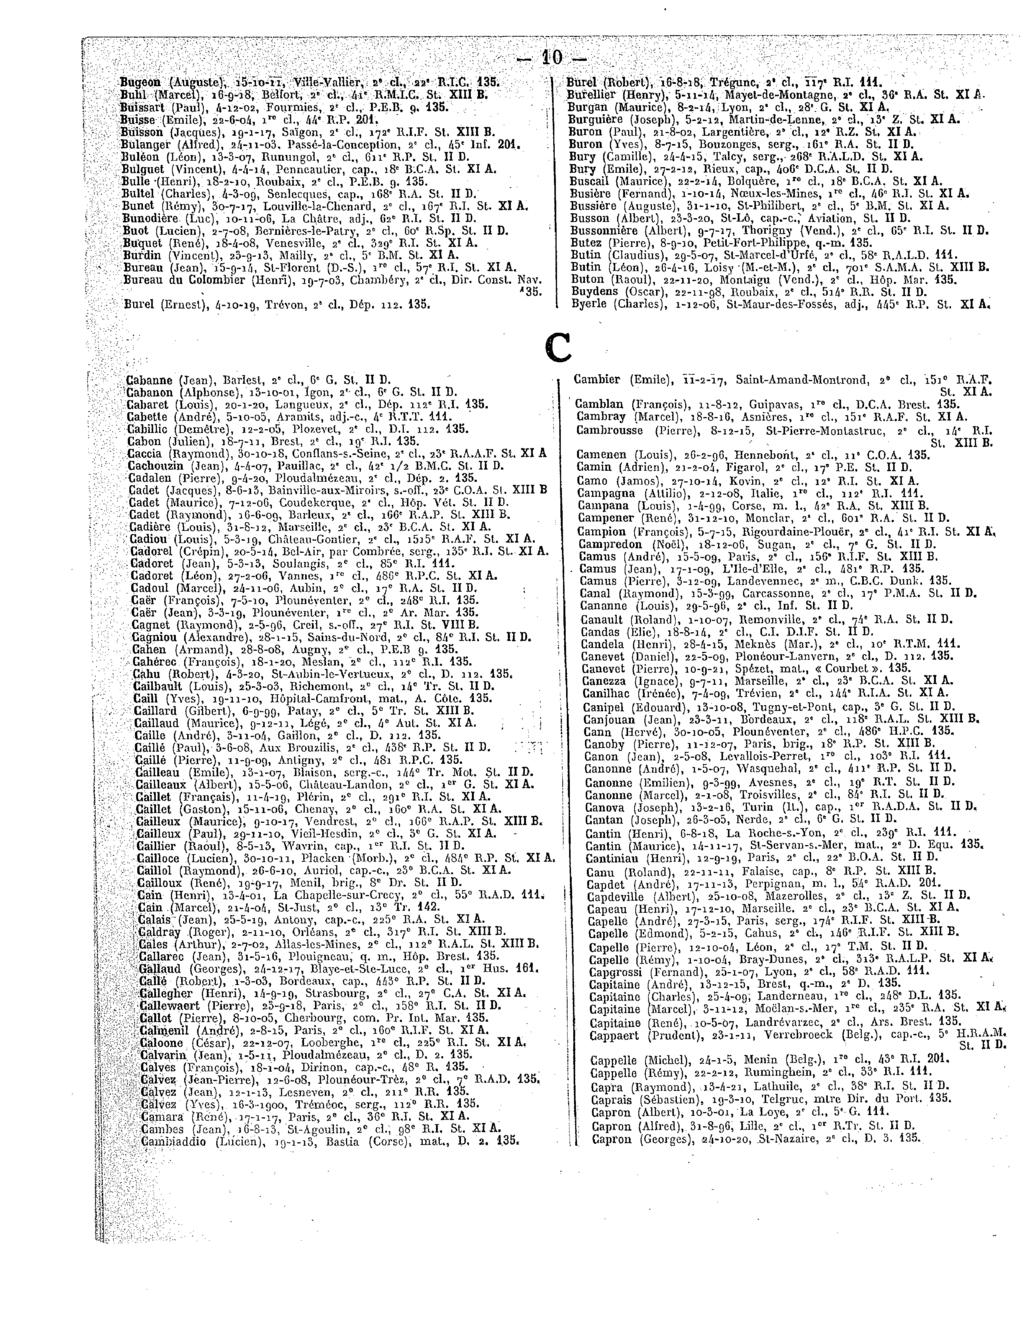 Bugeon(Auguste), is-io-ii,viîle-vahier, a"cl., aa**r.t.g. 135. Buhl(Marcel), 16-9-18, Beîforl,2' cl., 4i*R.M.I.C. St. XIIIB. Buissart(Paul),A-12-02, Fouimies,2"cl.,P.E.B.9. 135. Buisse(Emile), 22-6-04, 1 cl.